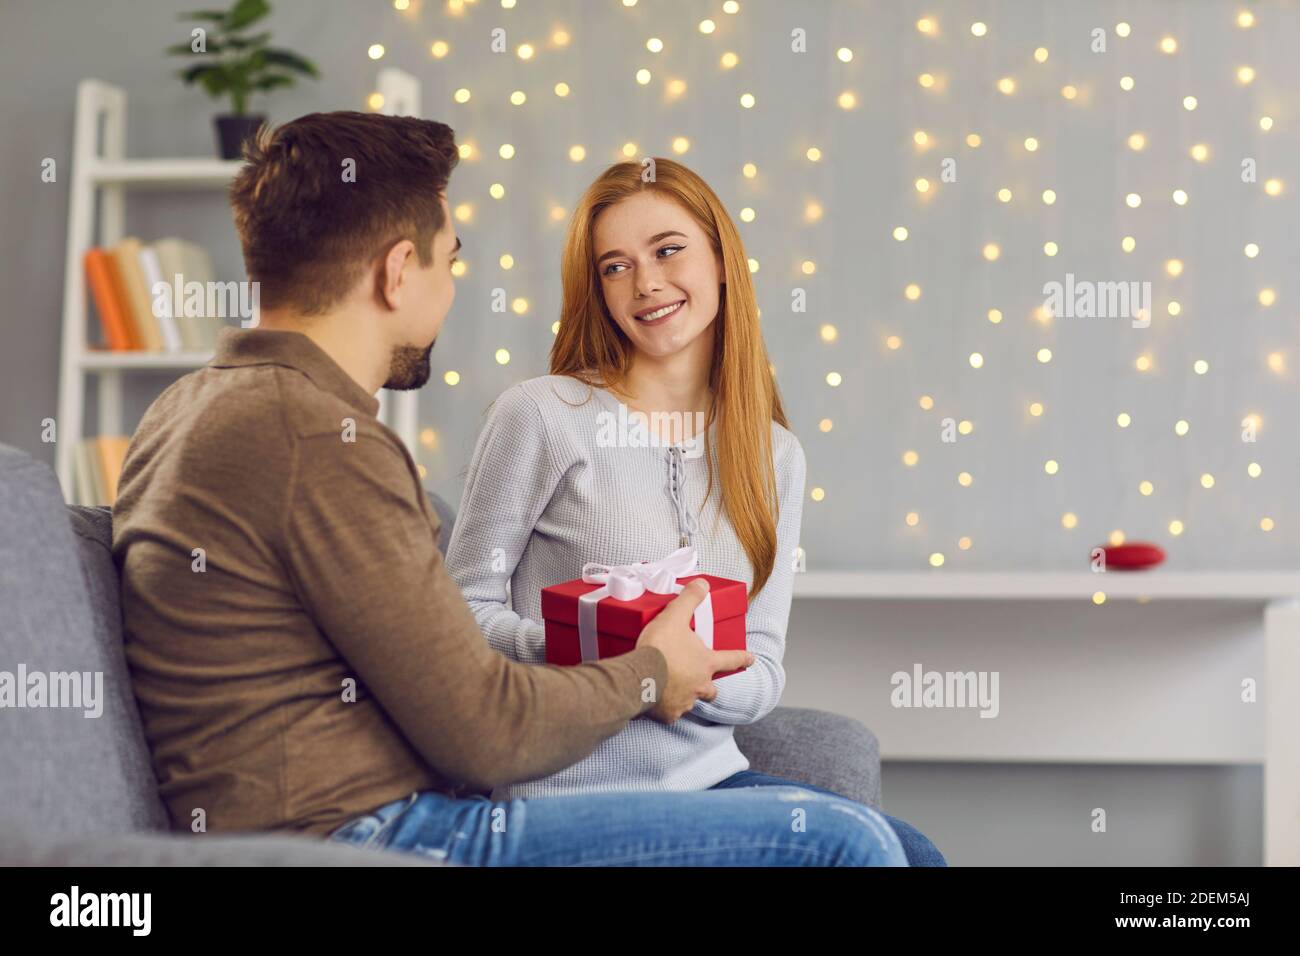 Jeune femme souriante petite fille assise et obtenir boîte cadeau avec ruban de l'homme aimant Banque D'Images